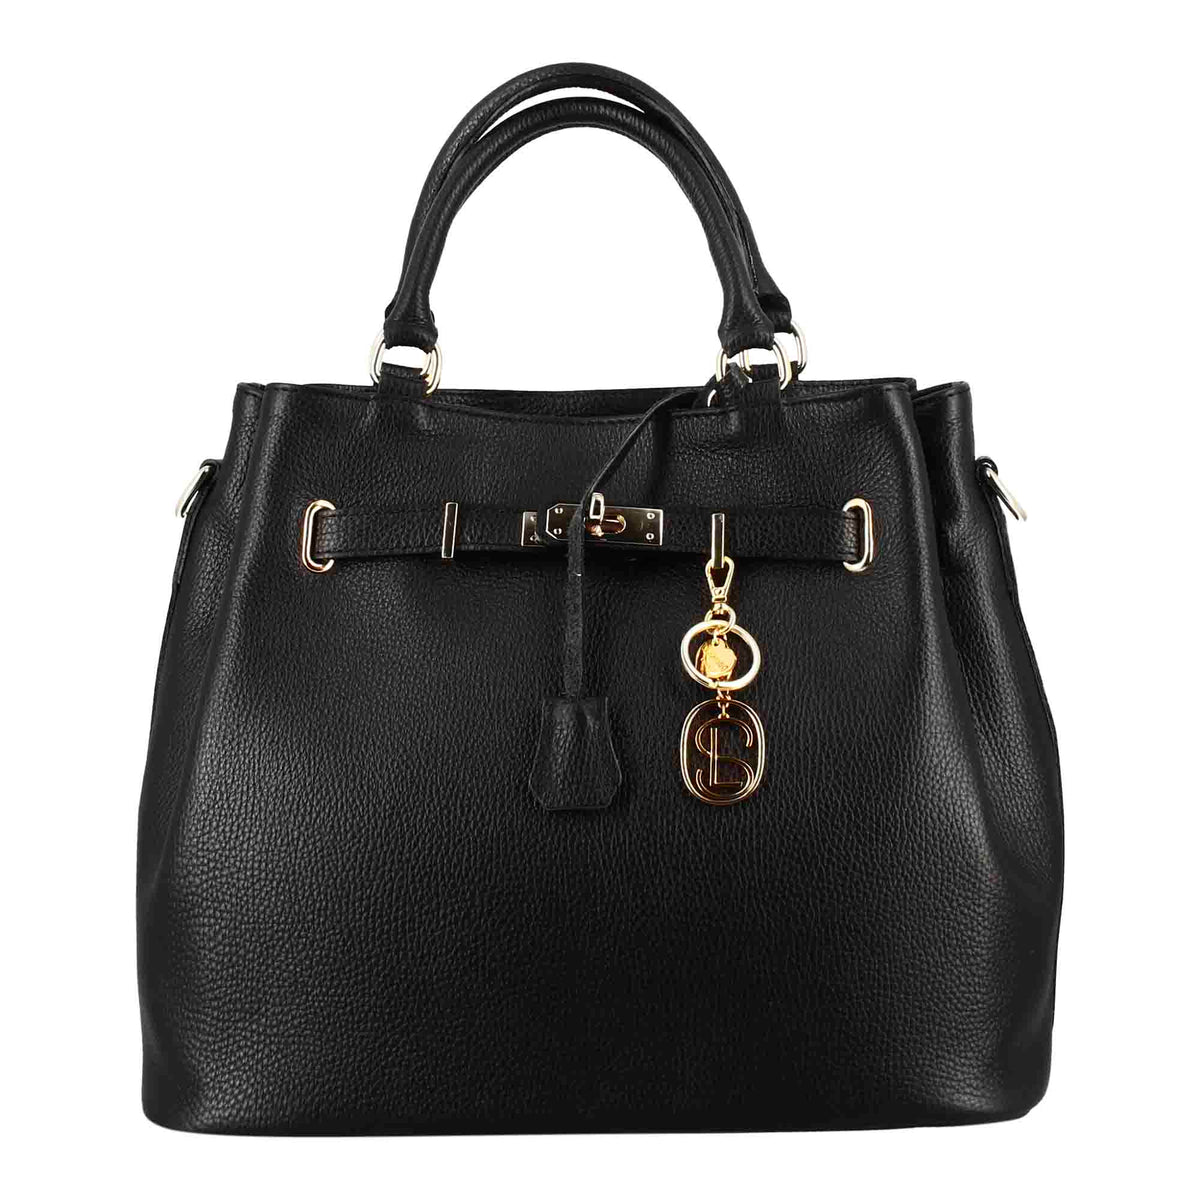 Frida leather handbag with removable black shoulder strap